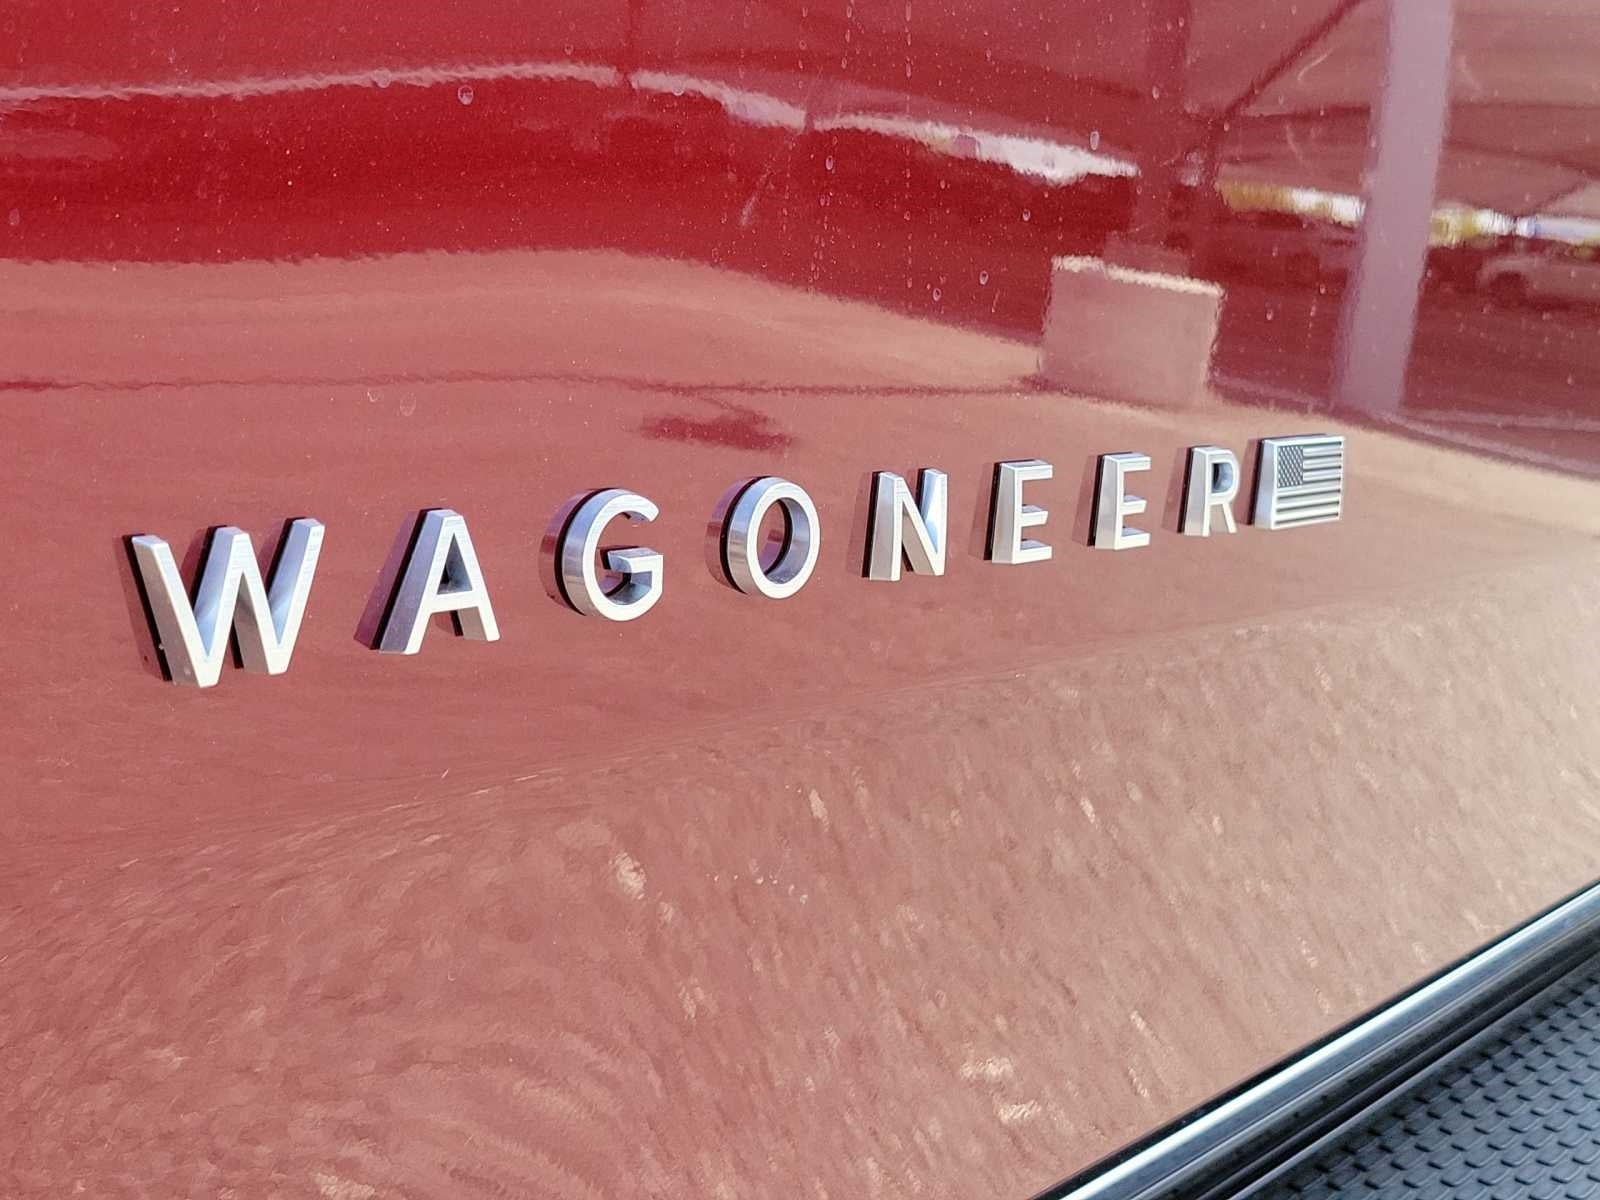 2024 Wagoneer Wagoneer Wagoneer 4X4